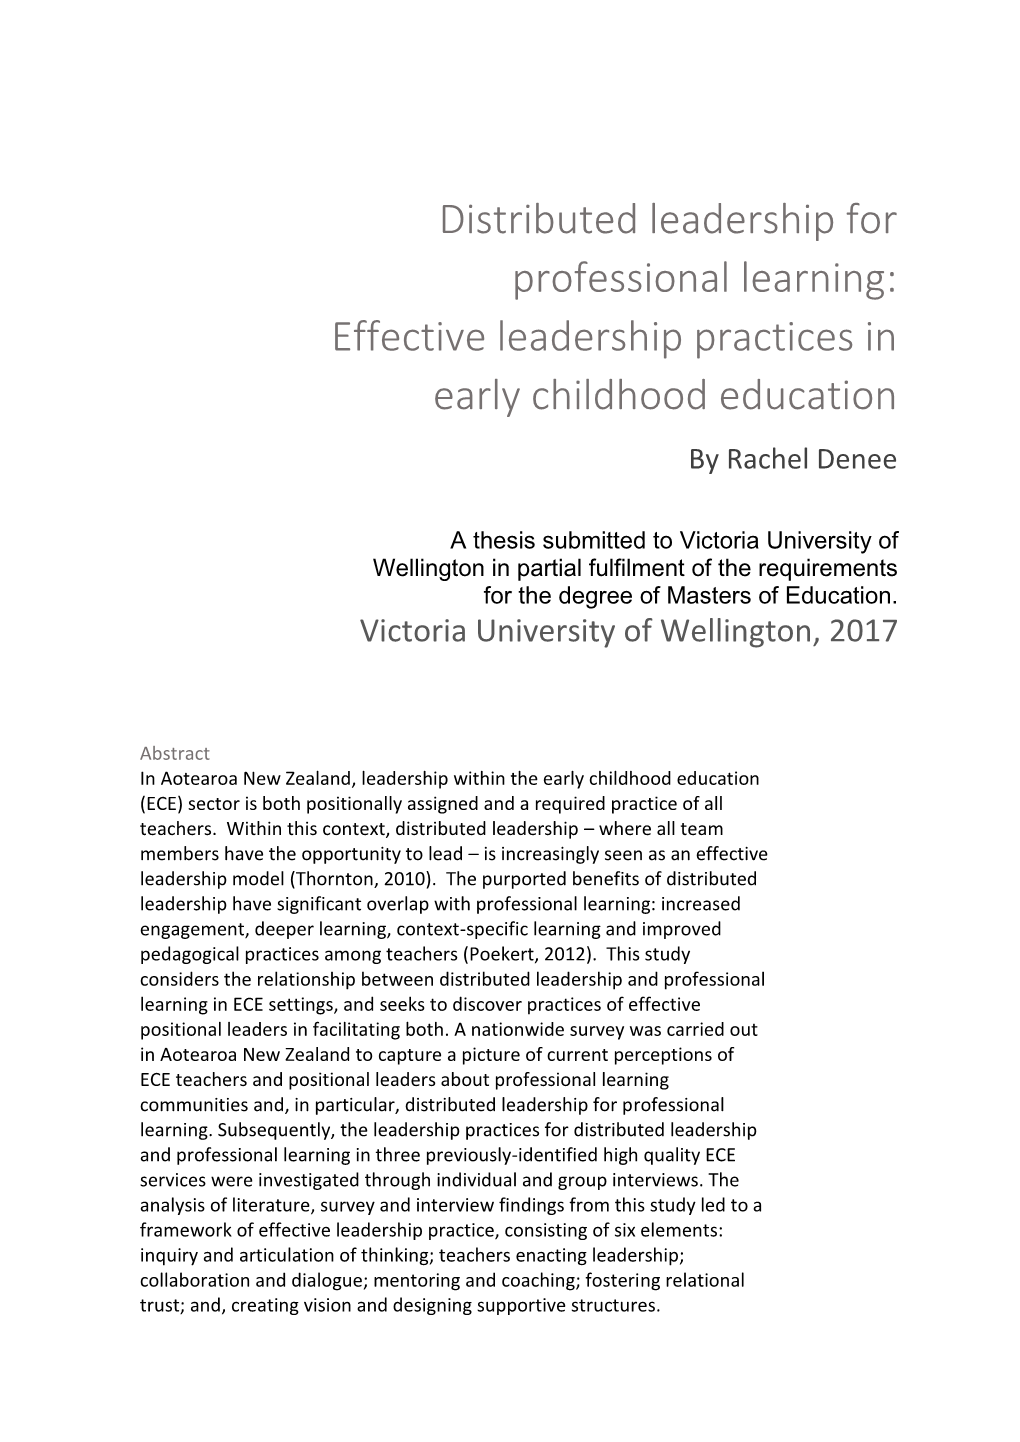 Effective Leadership Practices in Early Childhood Education by Rachel Denee